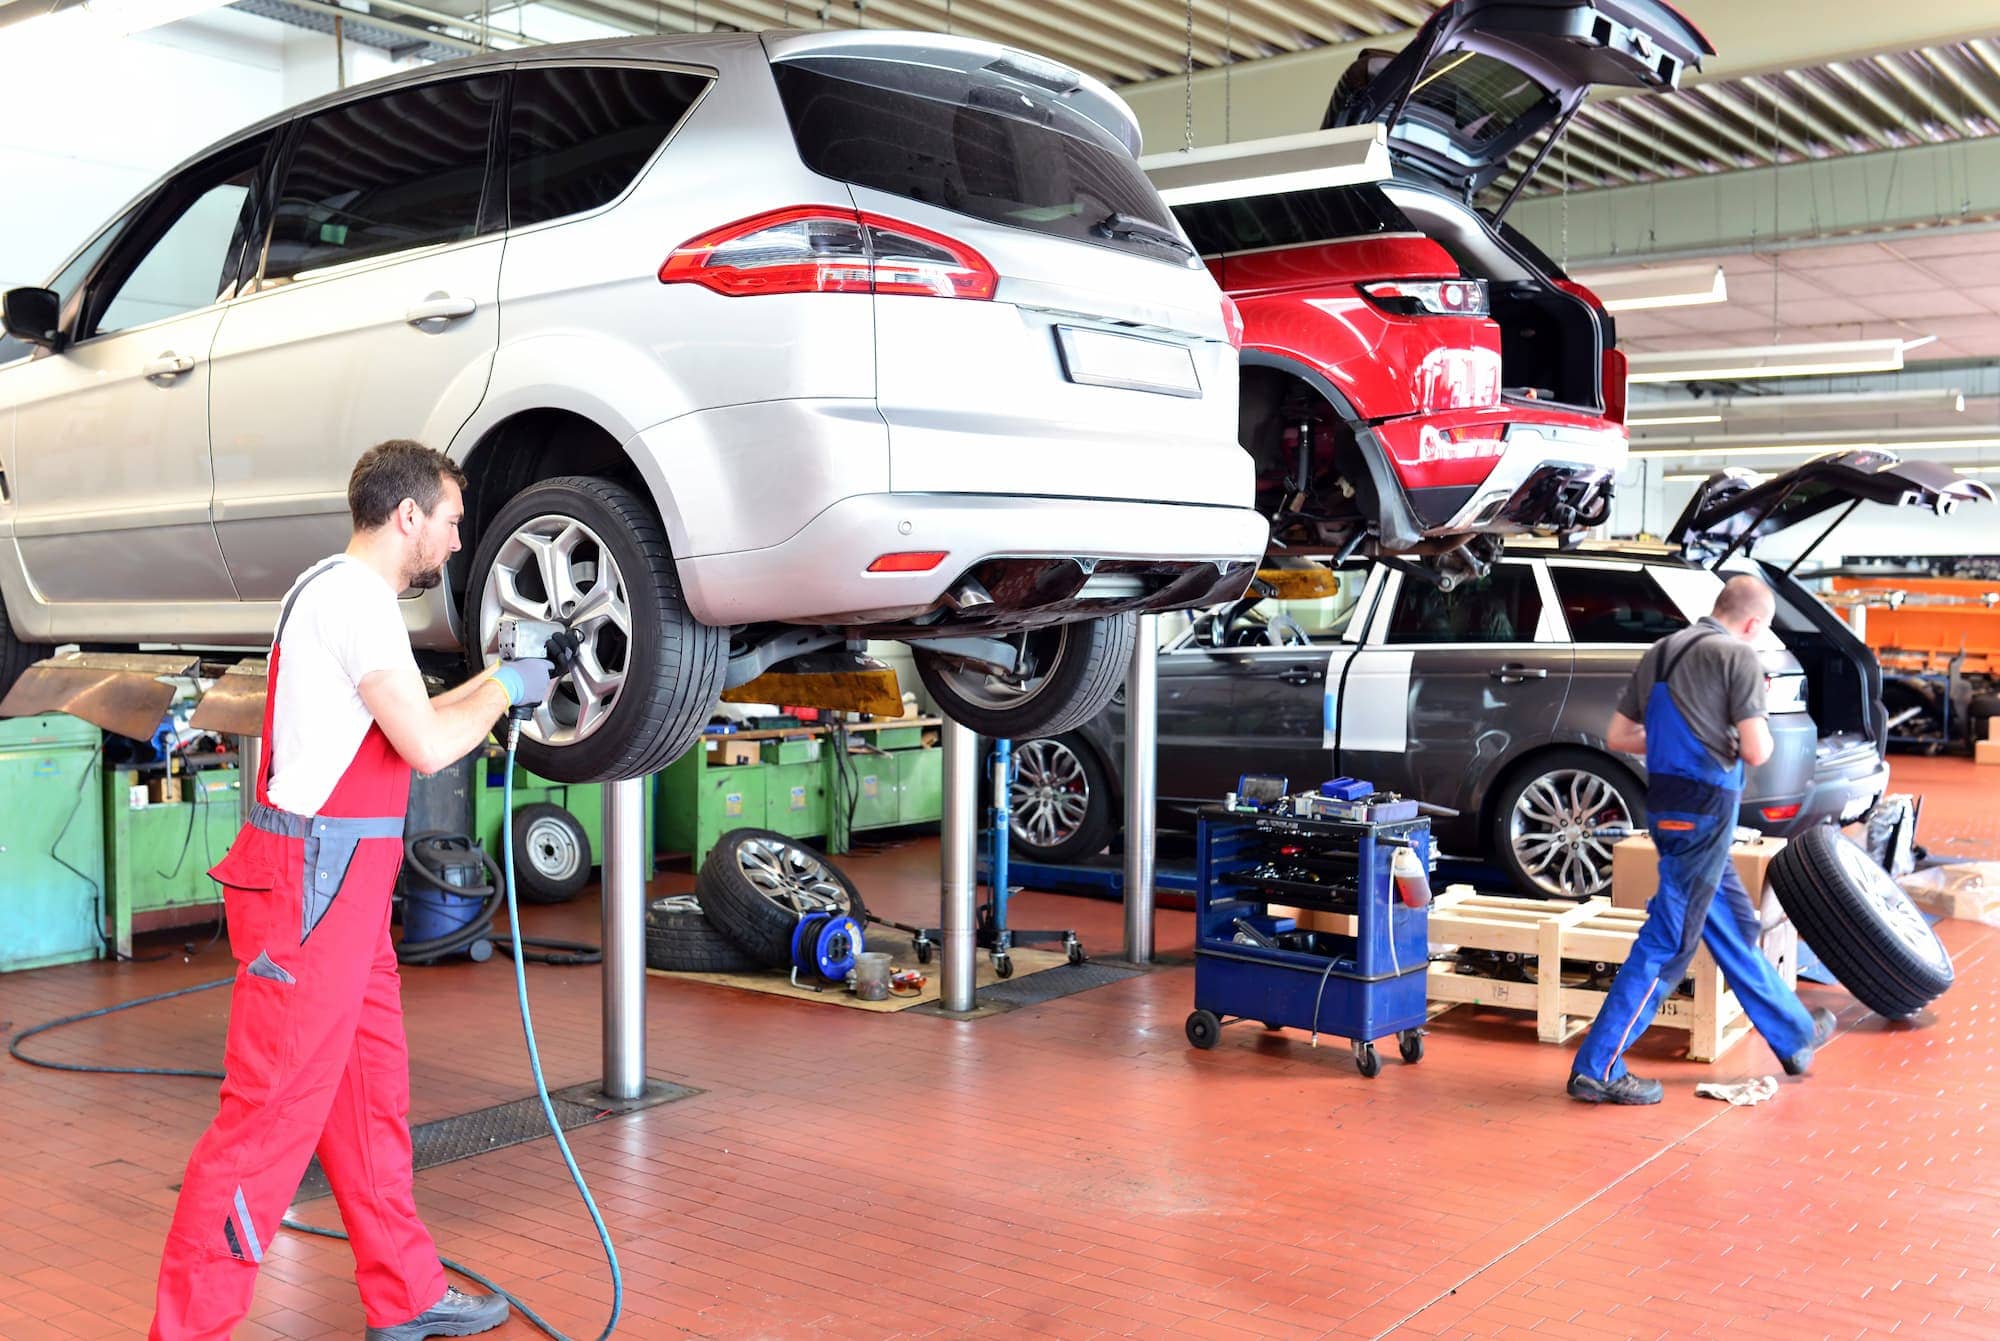 mécaniciens en garage changeant et vérifiant la pression des pneus de voitures